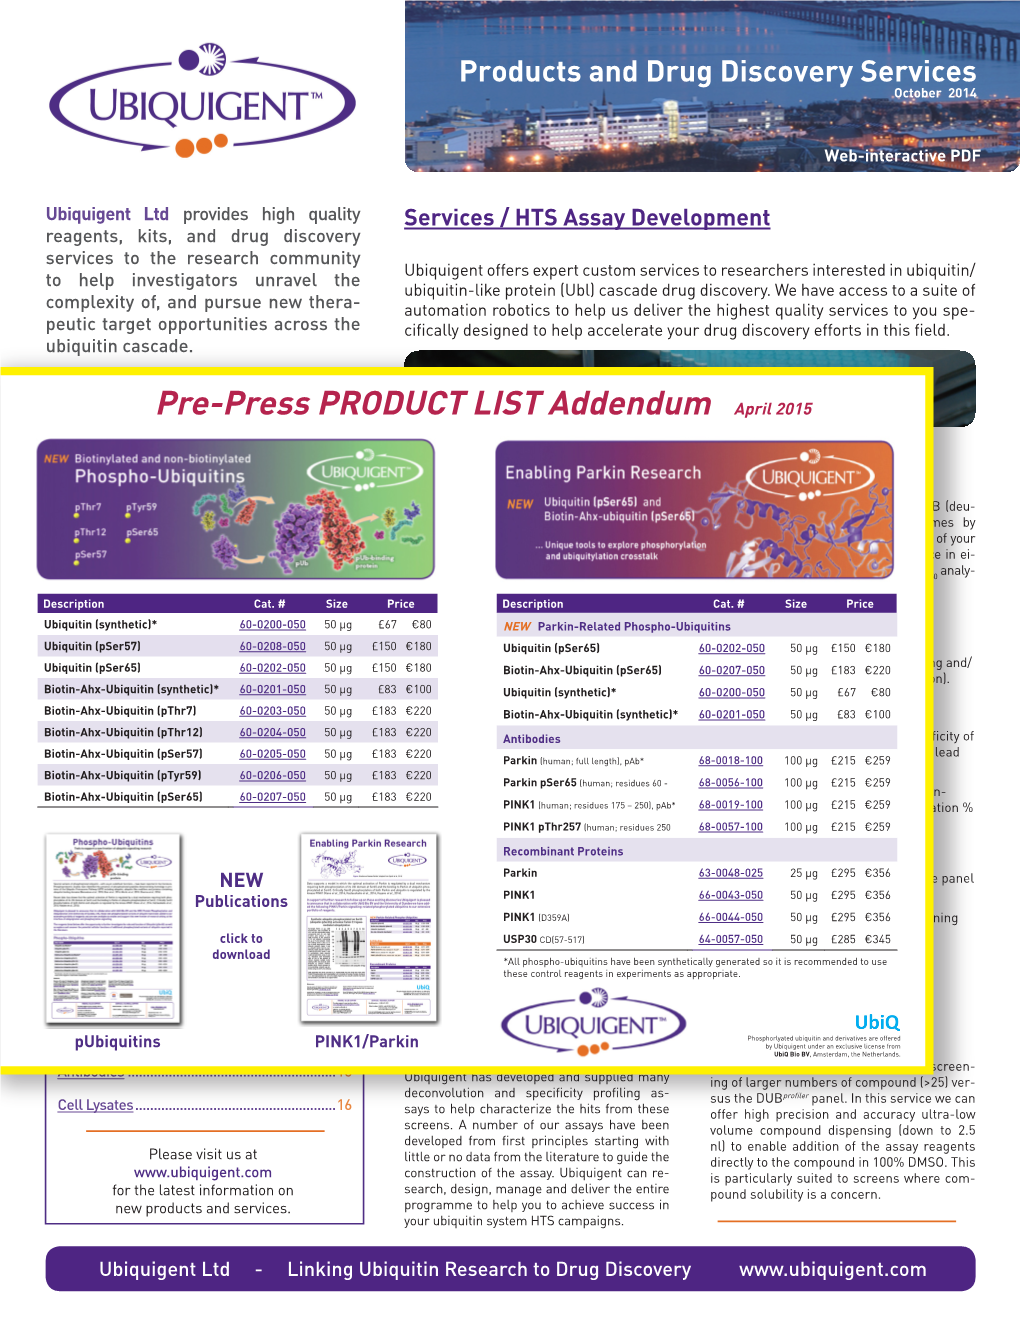 Pre-Press PRODUCT LIST Addendum April 2015